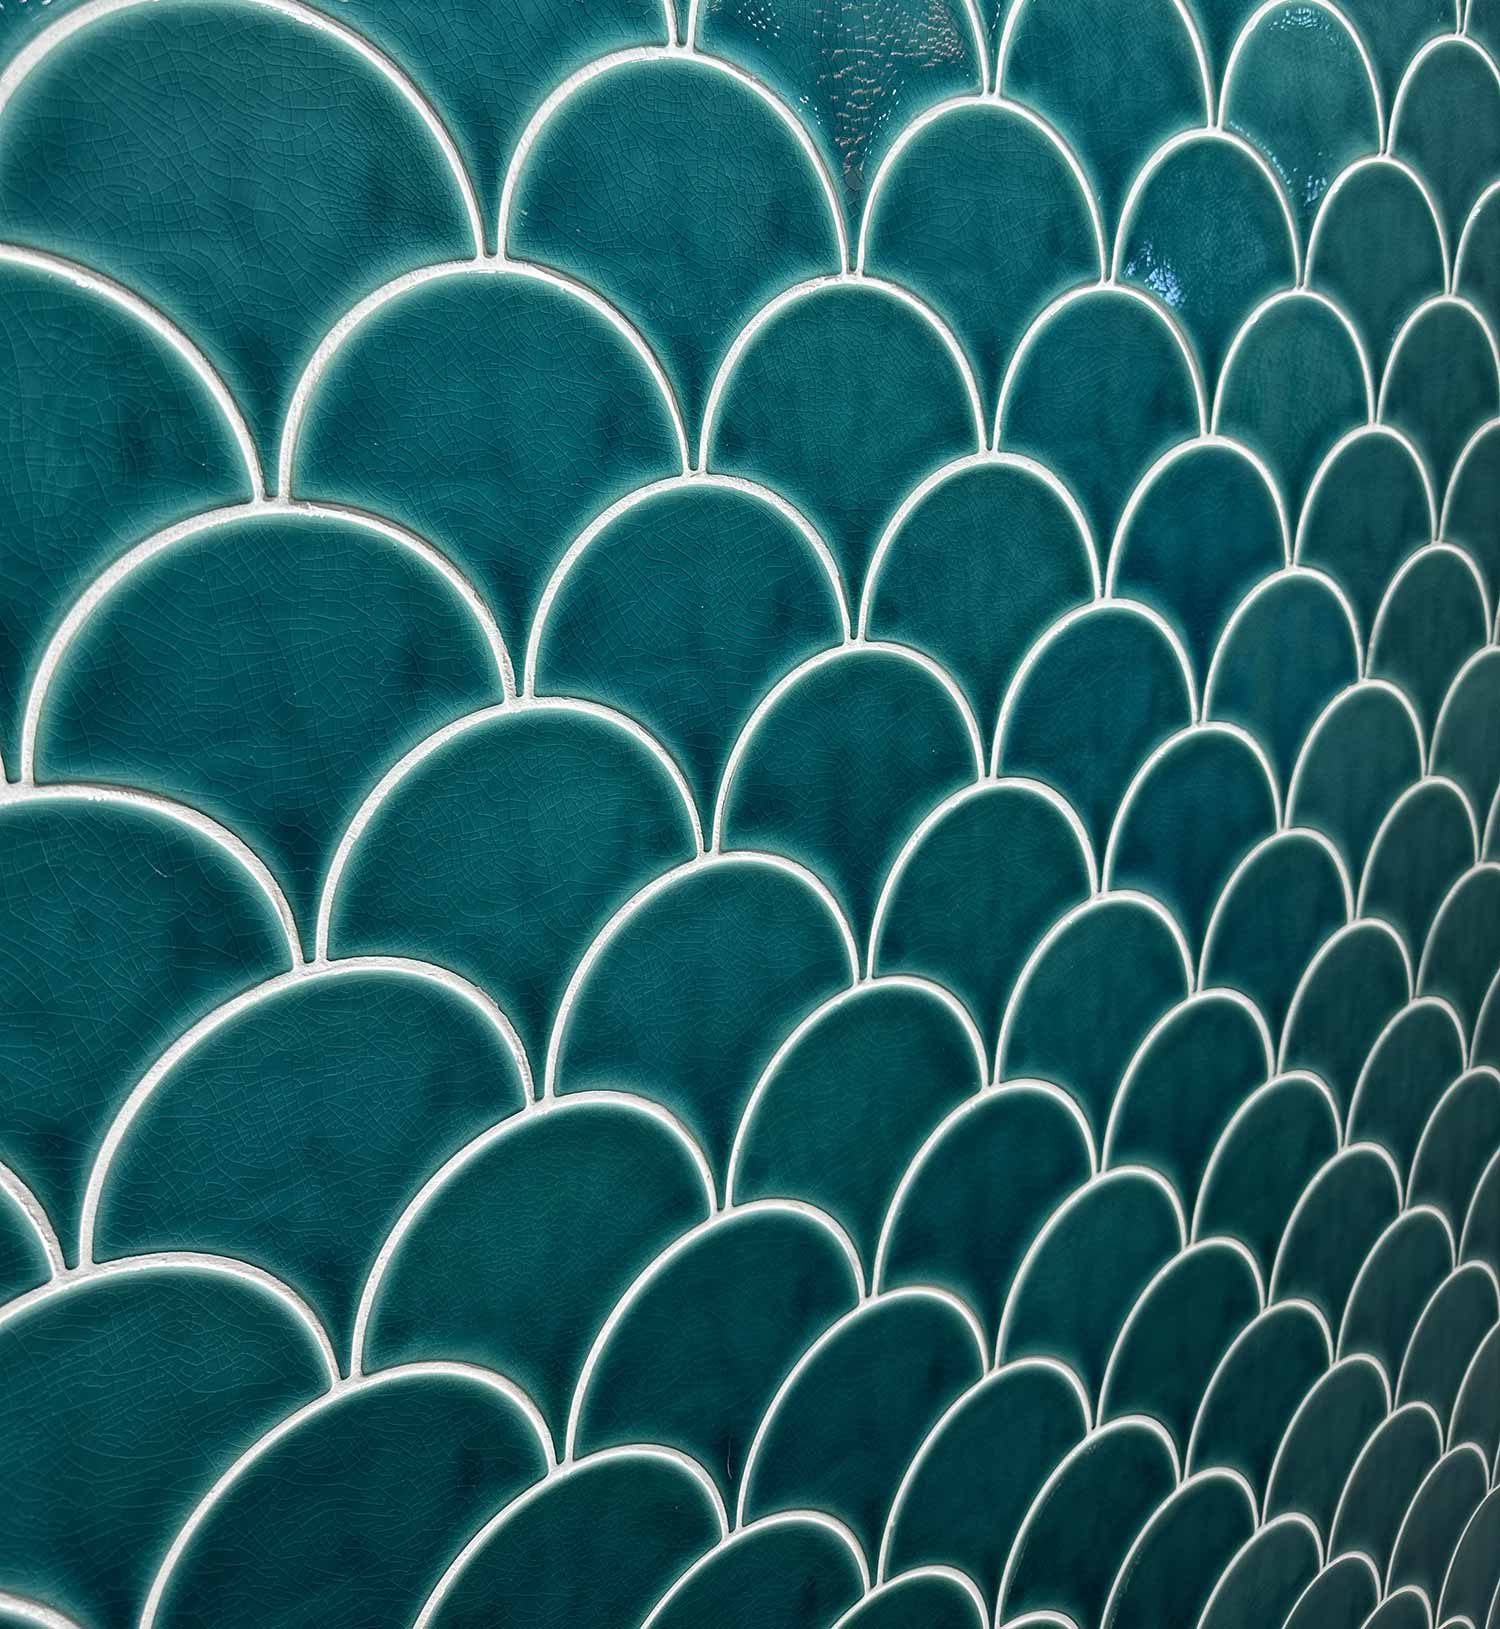 Carrelage mural forme écailles de poisson coloris turquoise